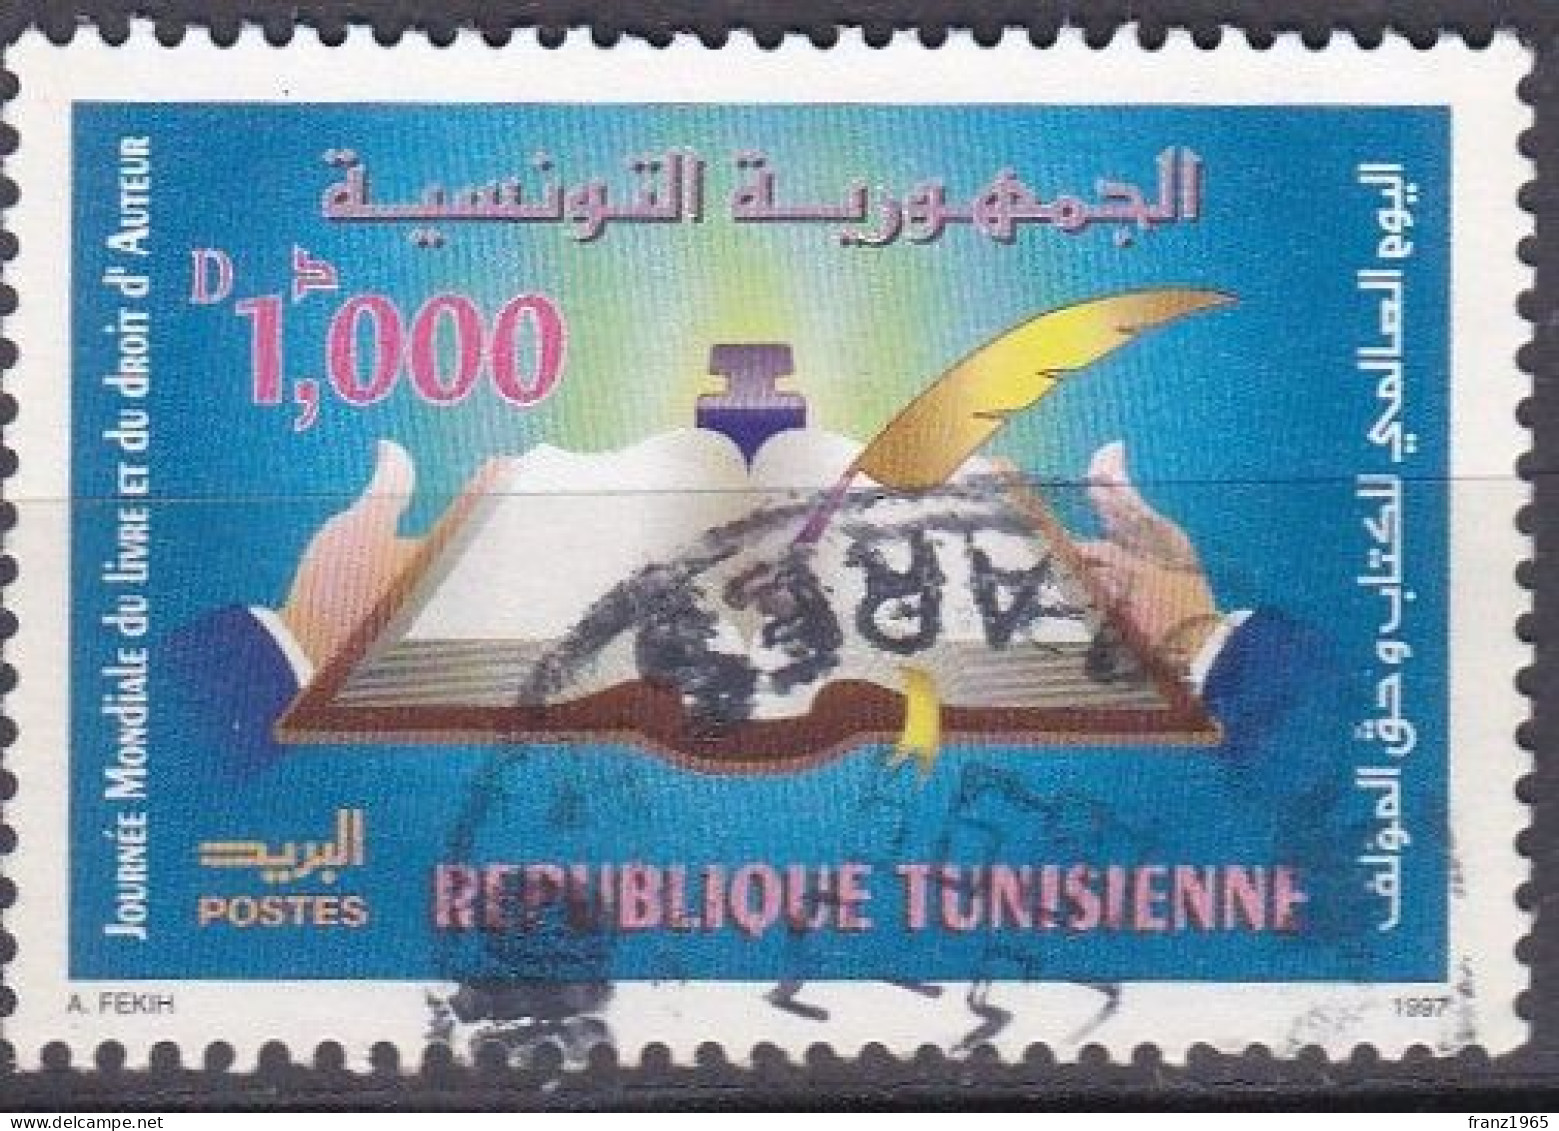 World Book Day - 1997 - Tunisia